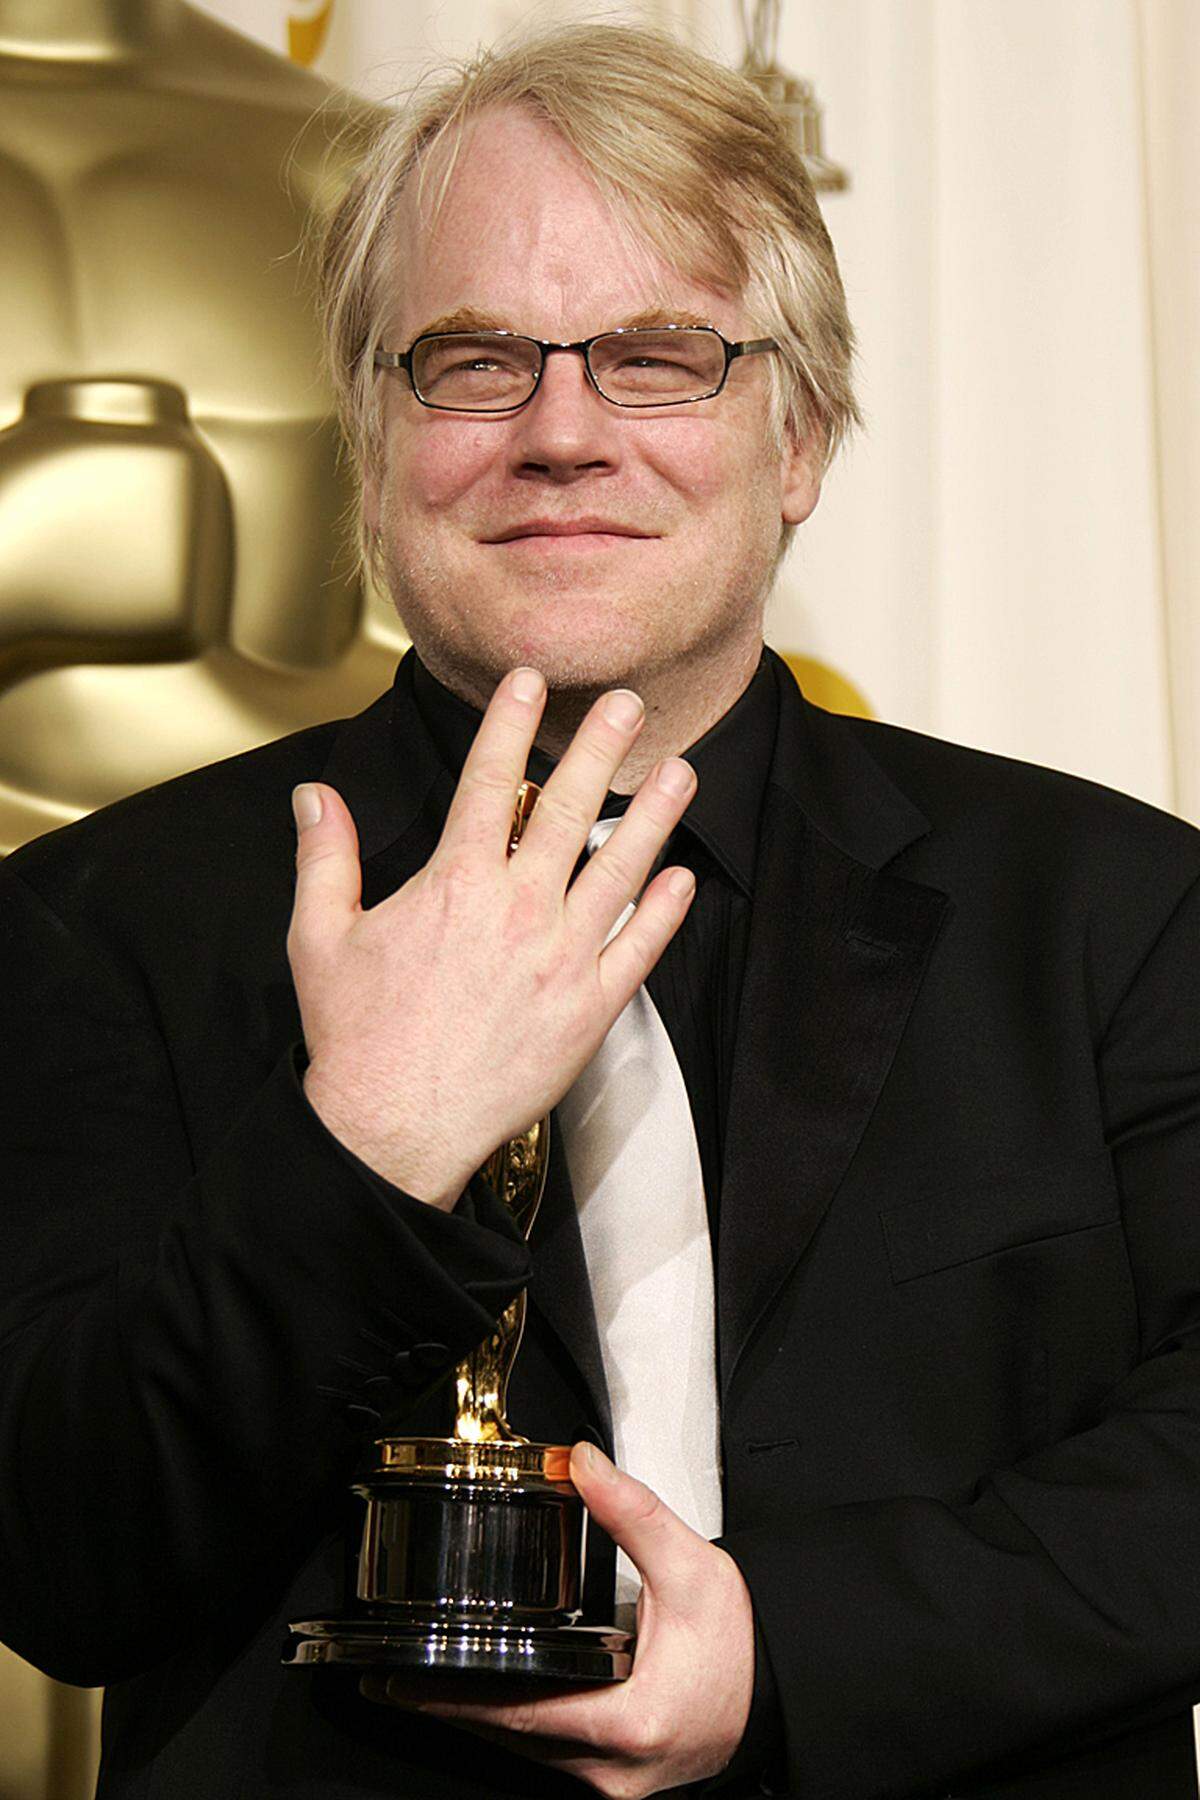 Der Schauspieler schöpfte aus eigenem Erfahrungsschatz: In Interviews erklärte er, als Jugendlicher selbst Drogen missbraucht zu haben und nach Ende des Studiums einen Entzug gemacht zu haben. Im vergangenen Jahr soll der er rückfällig geworden sein. Für "Capote" wurde Hoffman 2006 mit dem Oscar für den besten Hauptdarsteller ausgezeichnet.